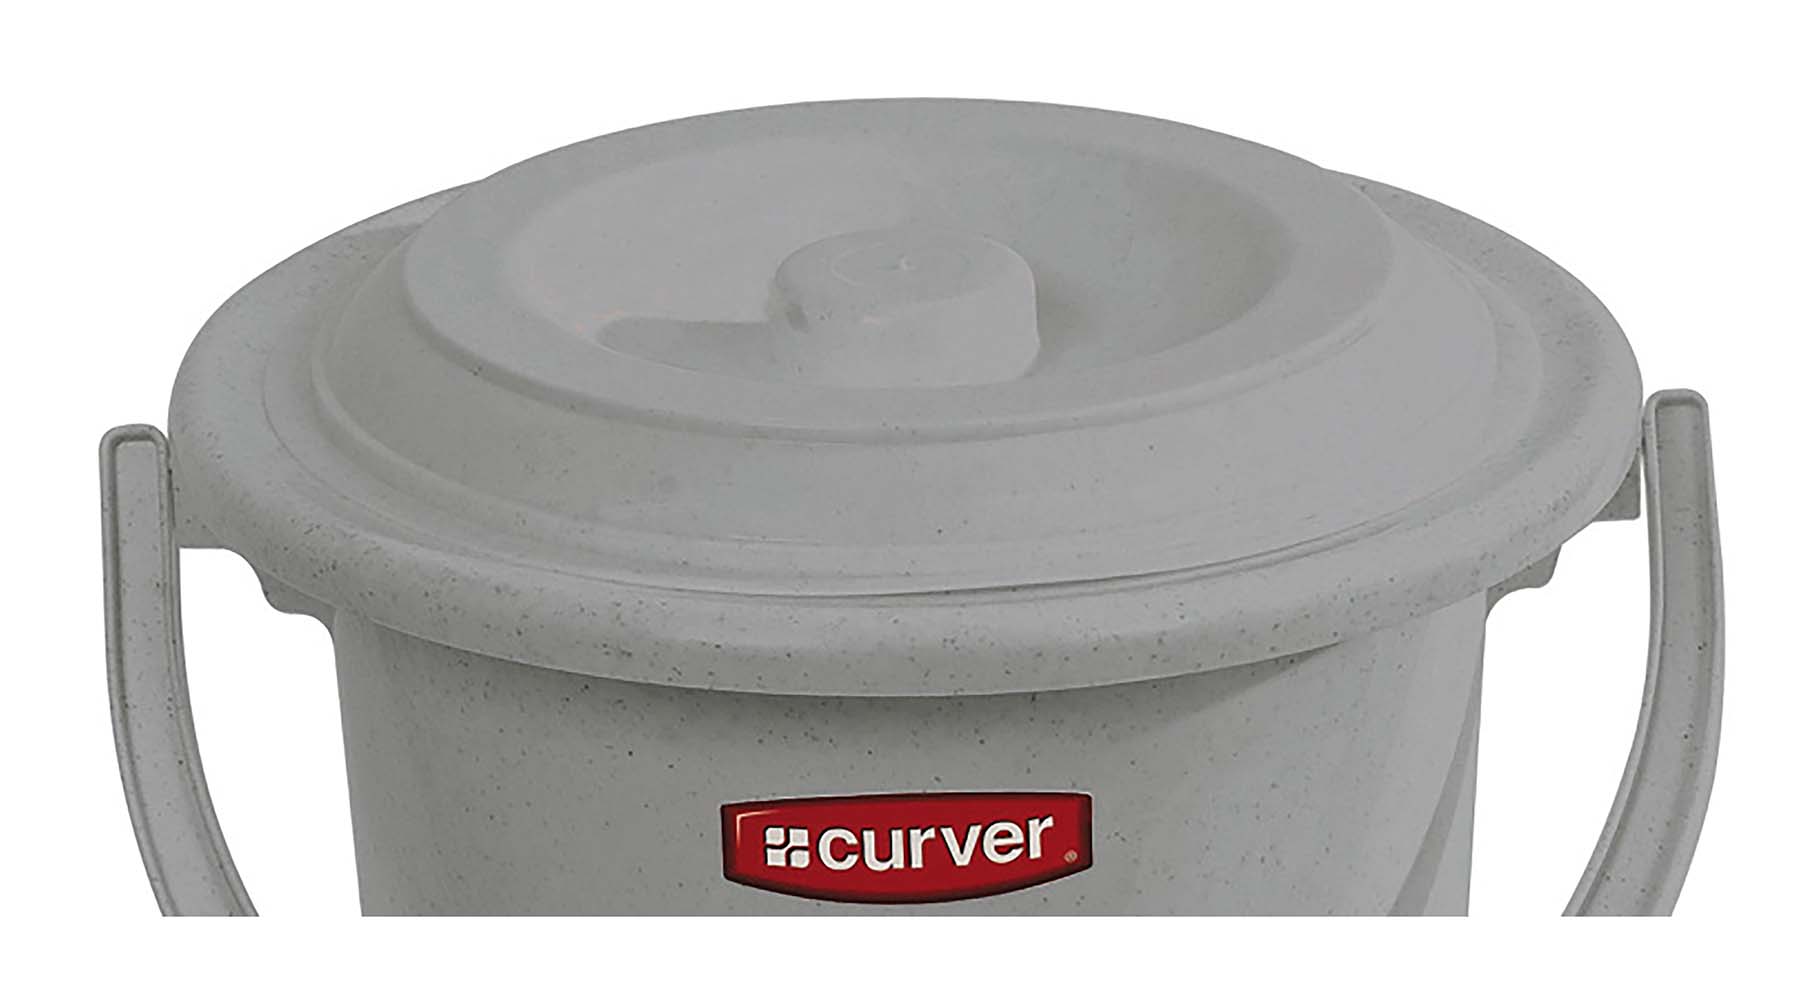 5526251 Een vervangend deksel voor de Curver toiletemmer van 5 liter. Ideaal ter vervanging van een kapot en/of versleten deksel.